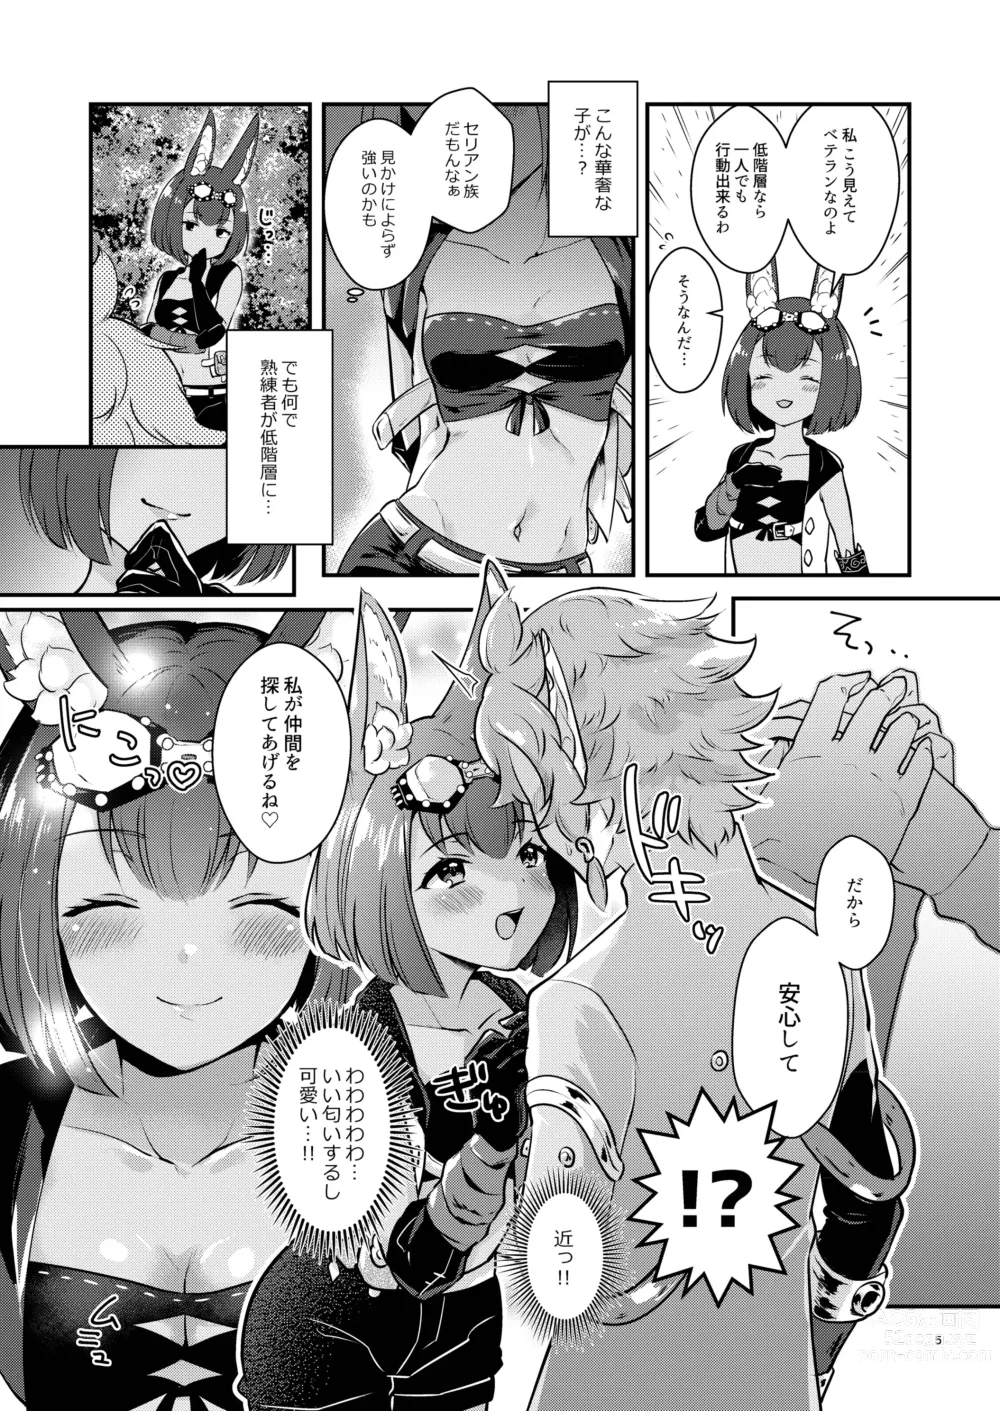 Page 5 of doujinshi Hound-chan wa Ecchi ga Shitai.